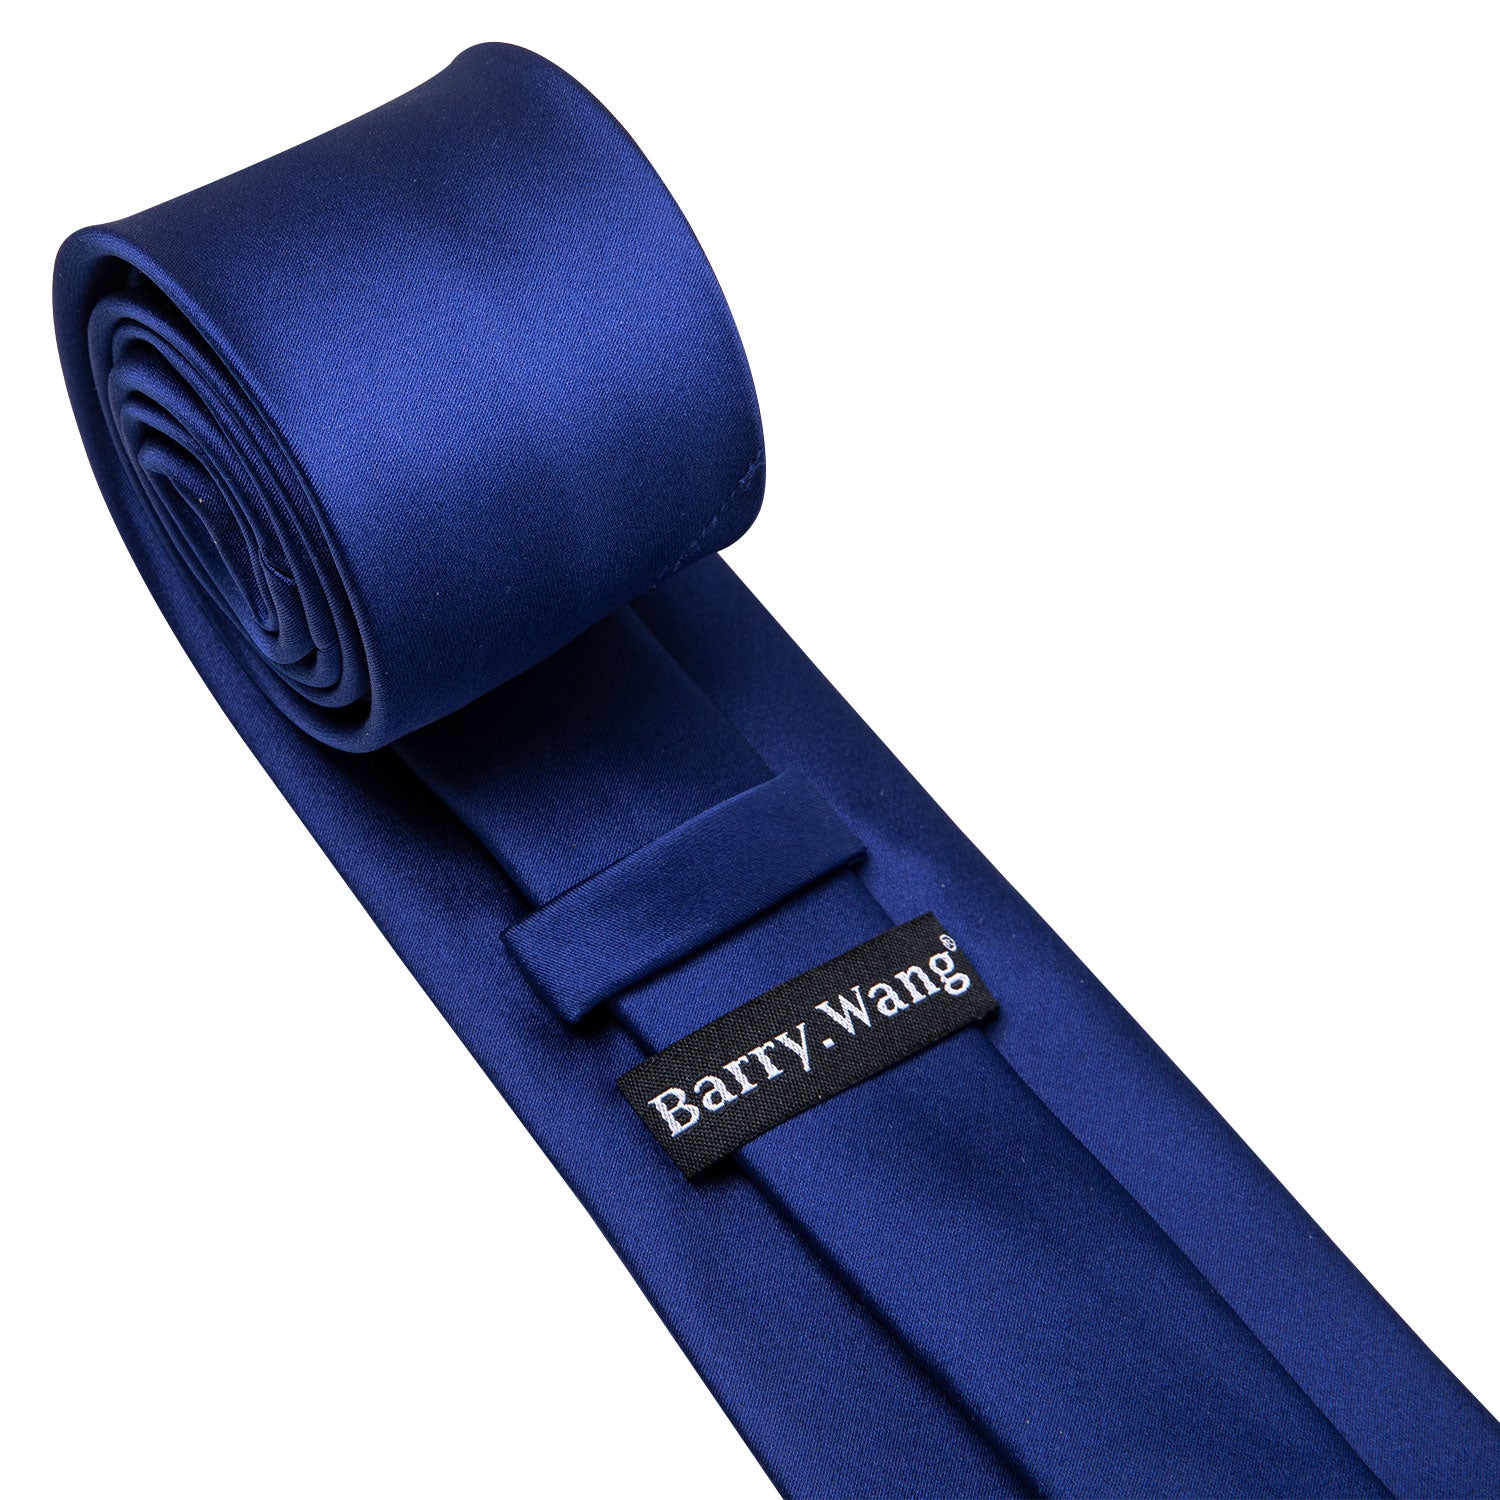 Sapphire Blue Necktie Handkerchief Cufflinks Set